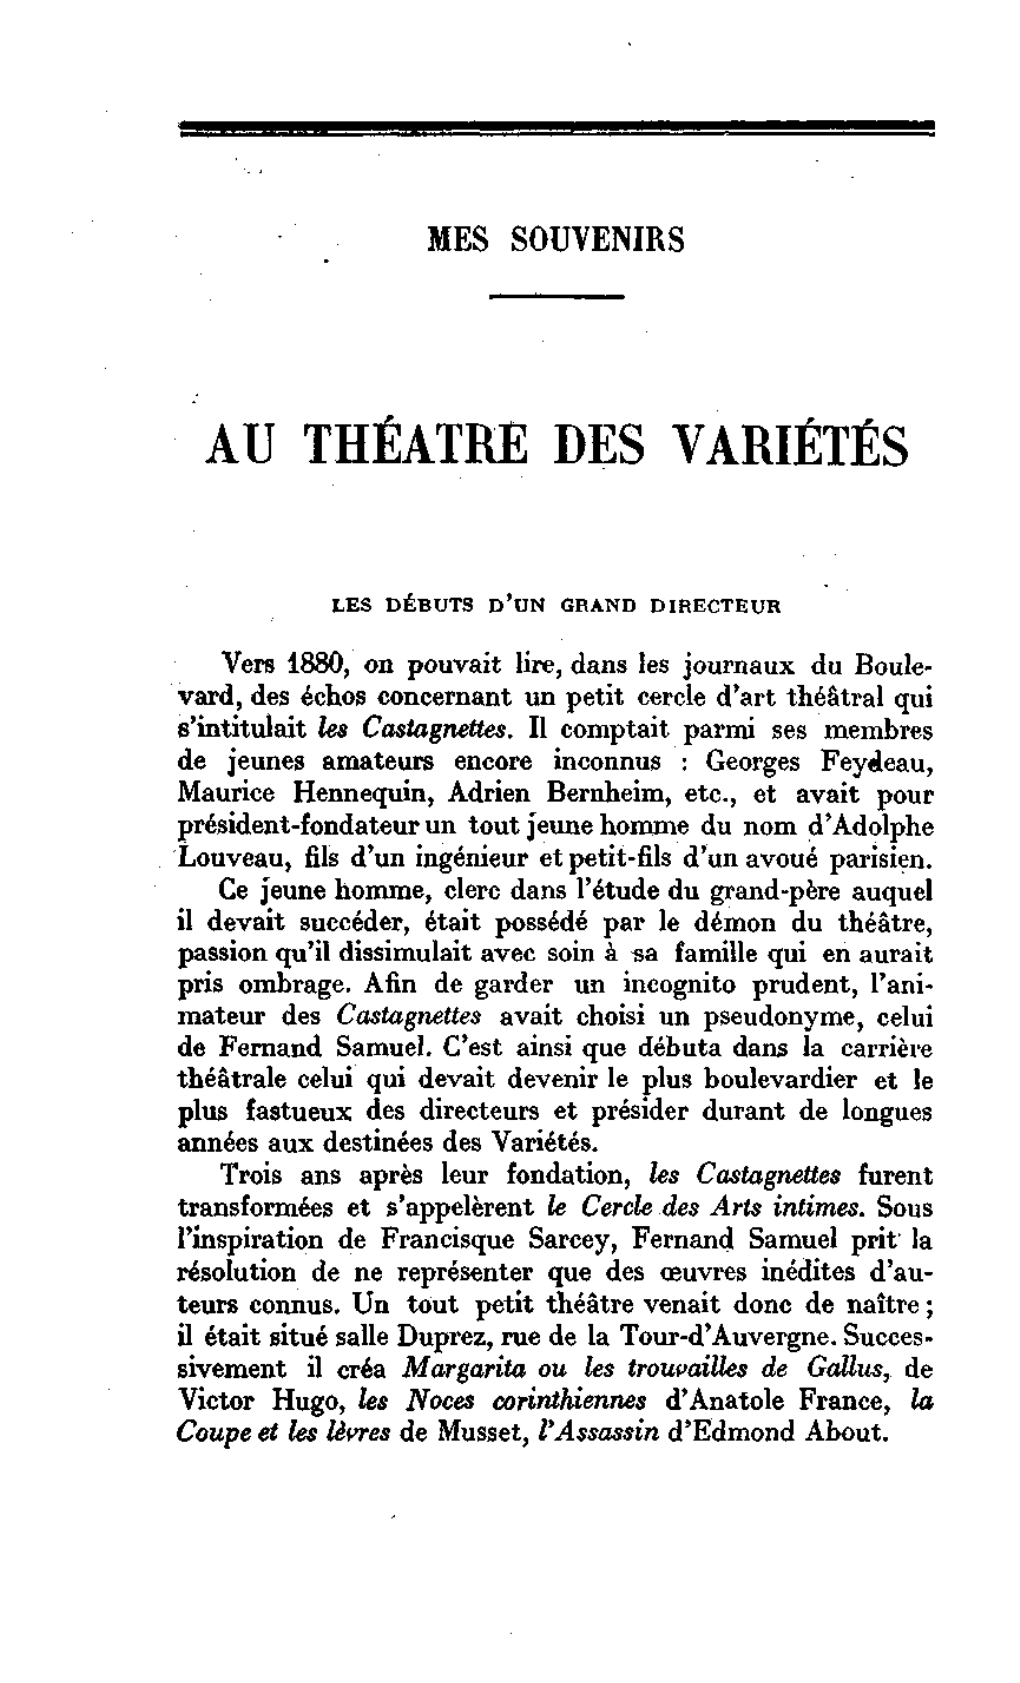 Au Théâtre Des Variétés